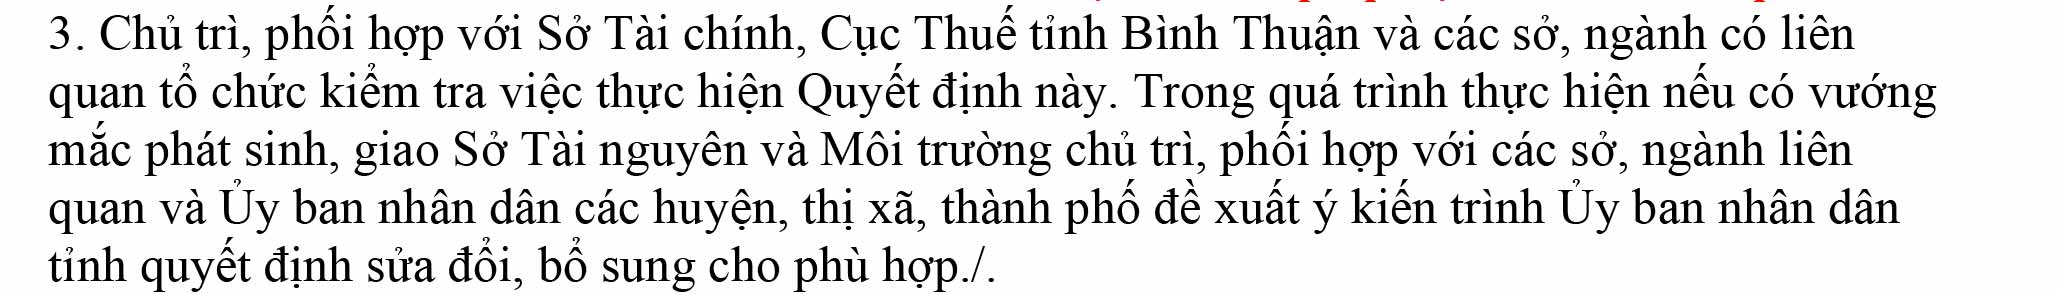 bảng-giá-đất-Bình-Thuận